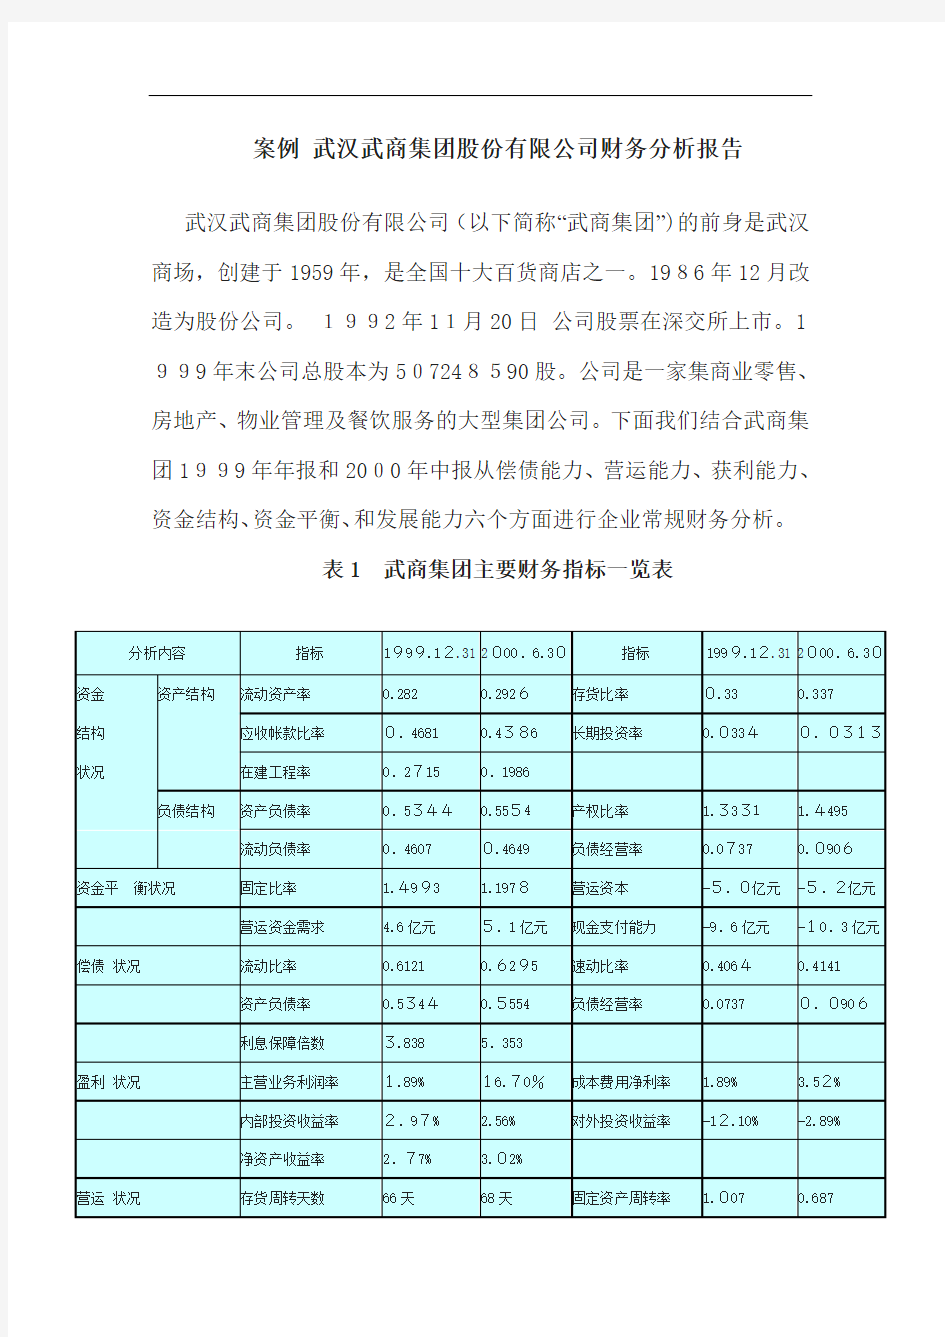 案例武汉武商集团股份有限公司财务分析案例